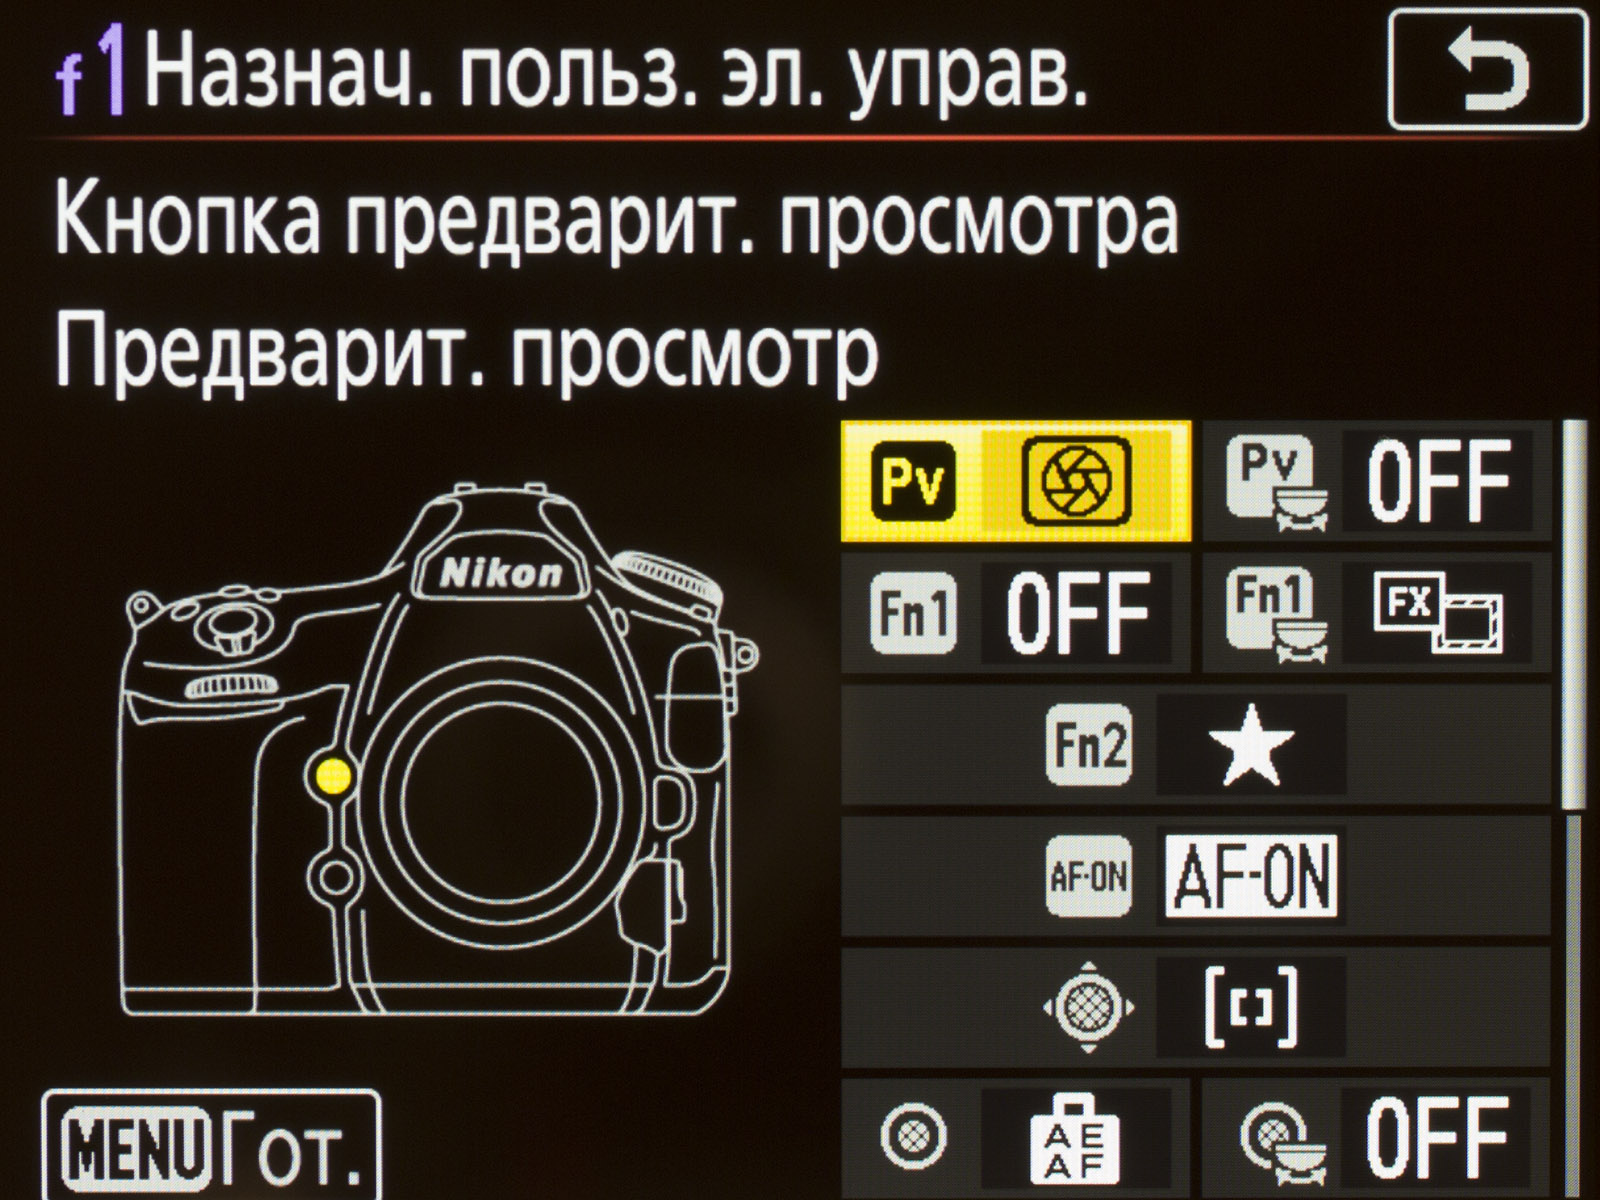 Настройки камеры 12 про. Настройки фотоаппарата. Nikon кнопка предварительного просмотра.